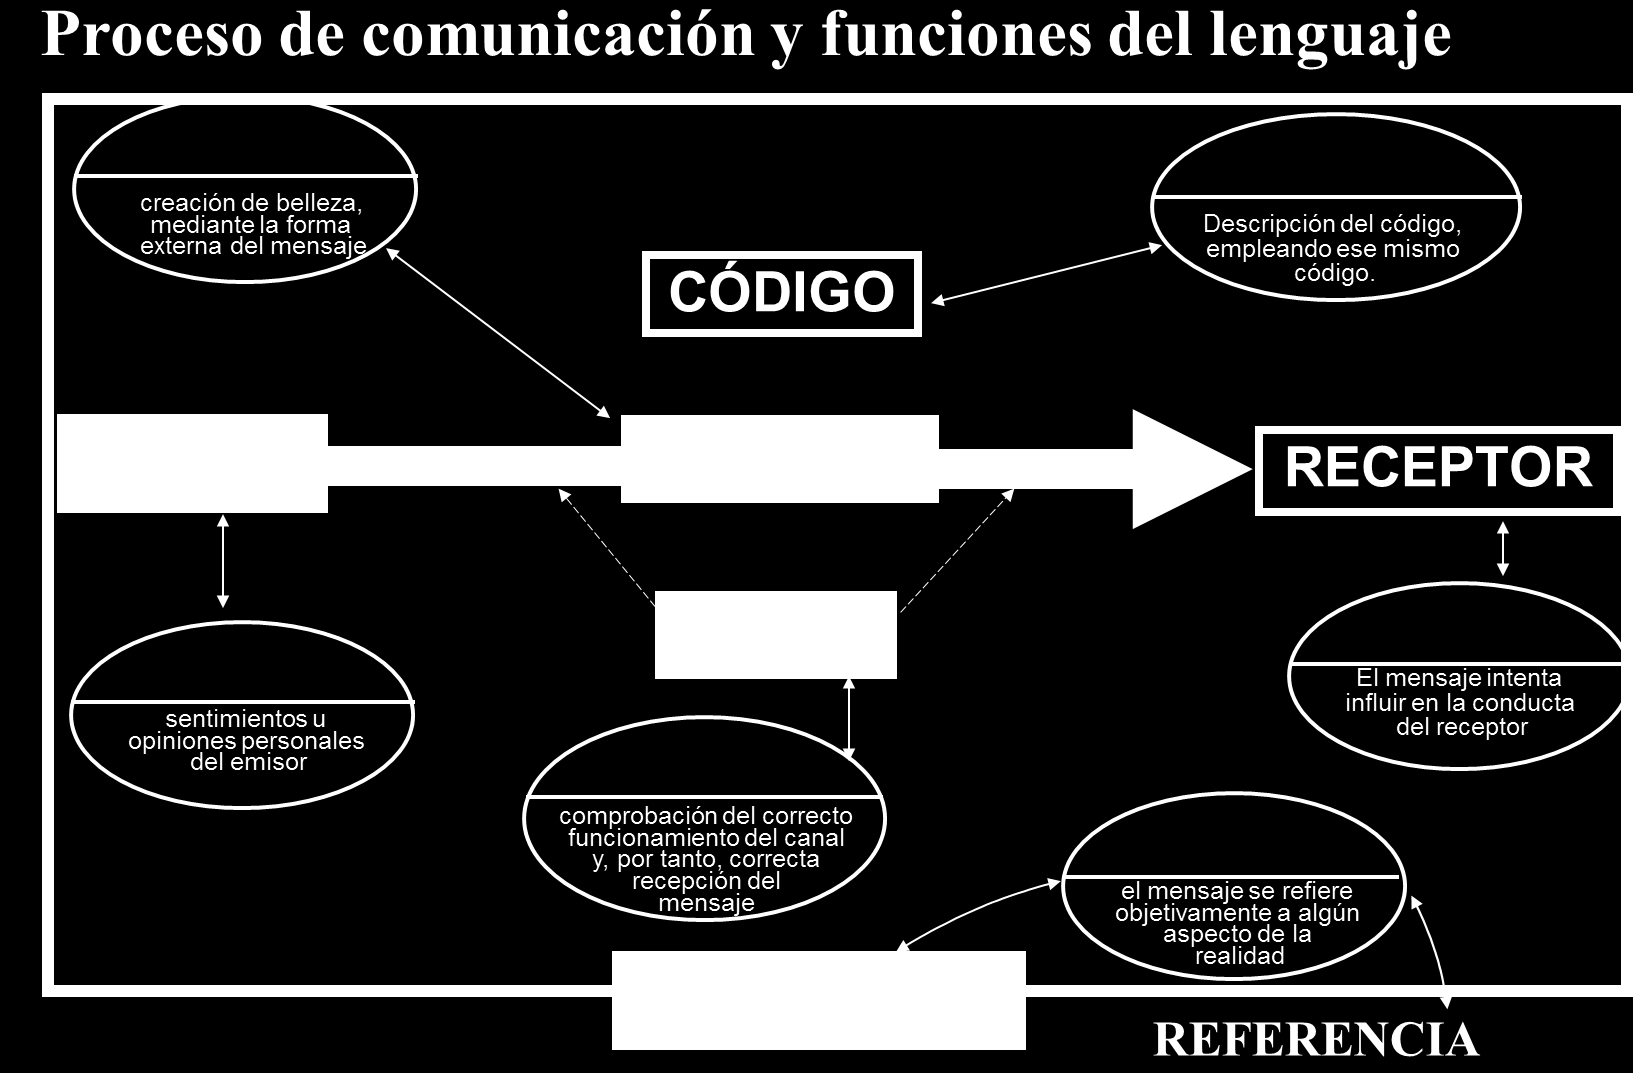 Evidentemente, este esquema es una simplificación. Ya vimos en las actividades previas que el proceso de comunicación podía llegar a ser muy complicado.